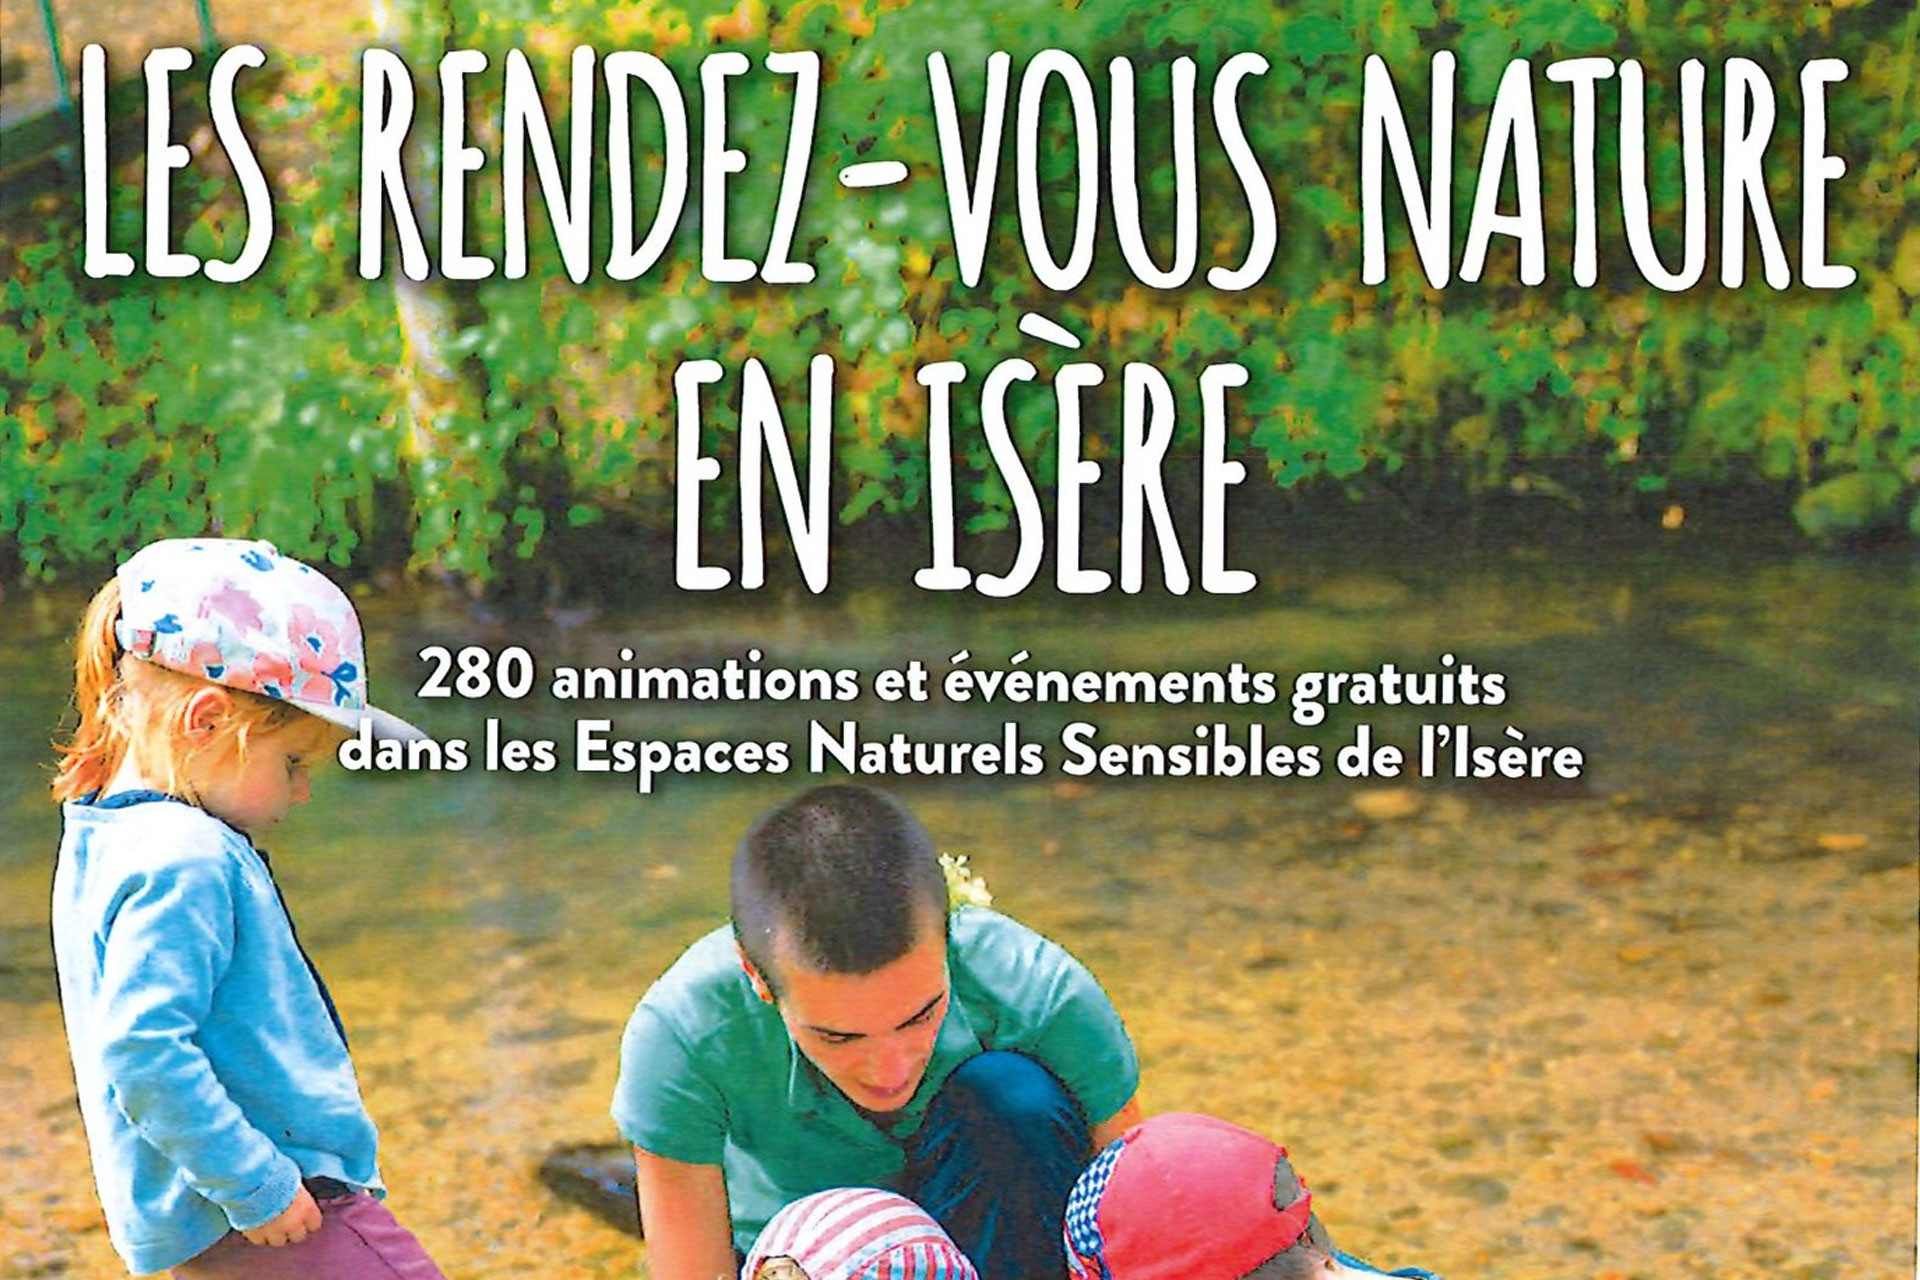 Rendez-vous nature en Isère: guided tour of a sensitive natural area